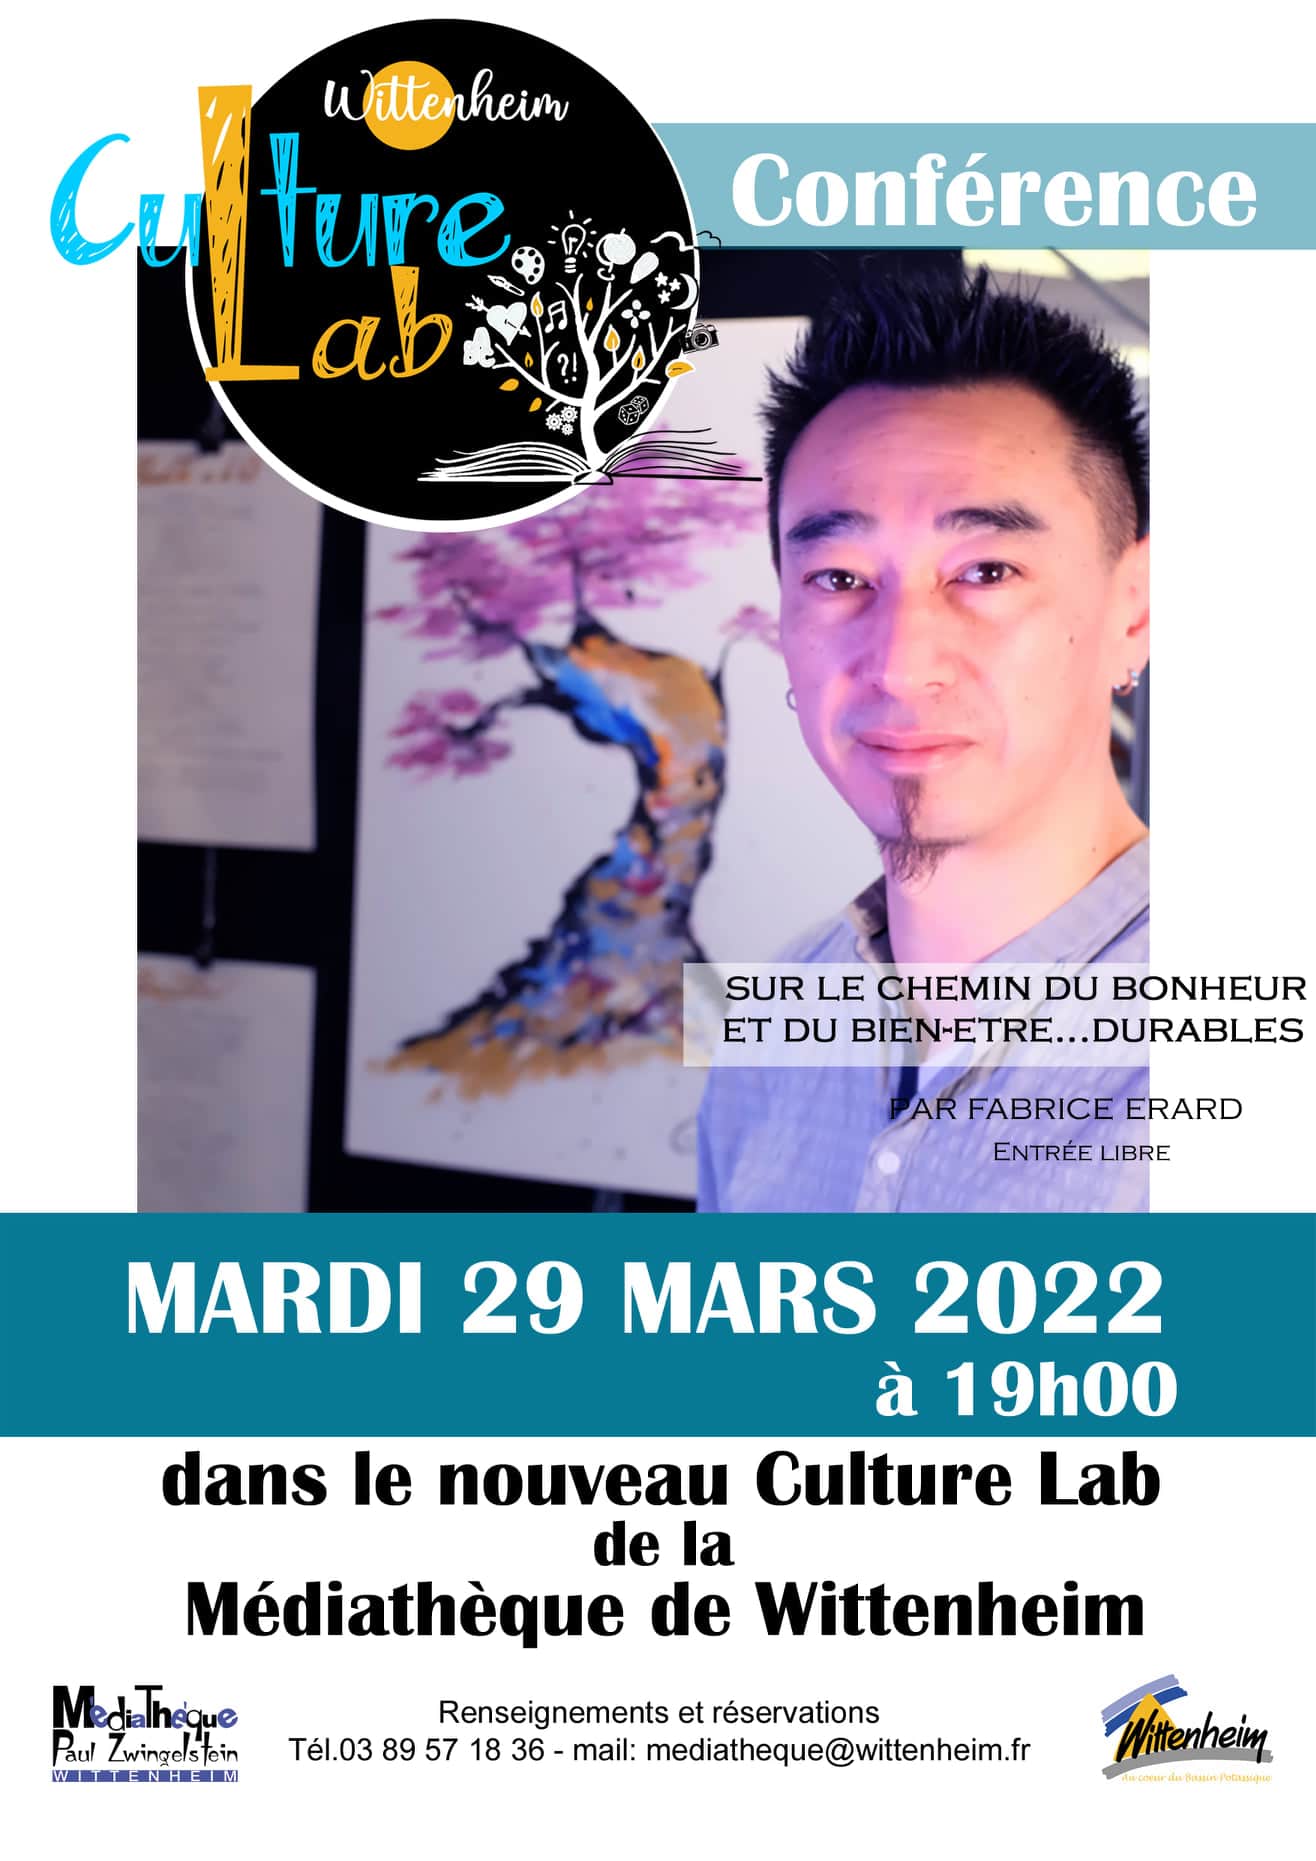 Affiche de la conférence du 29 mars 2022 de Fabrice Erard à la médiathèque de Wittenheim - Culture Lab